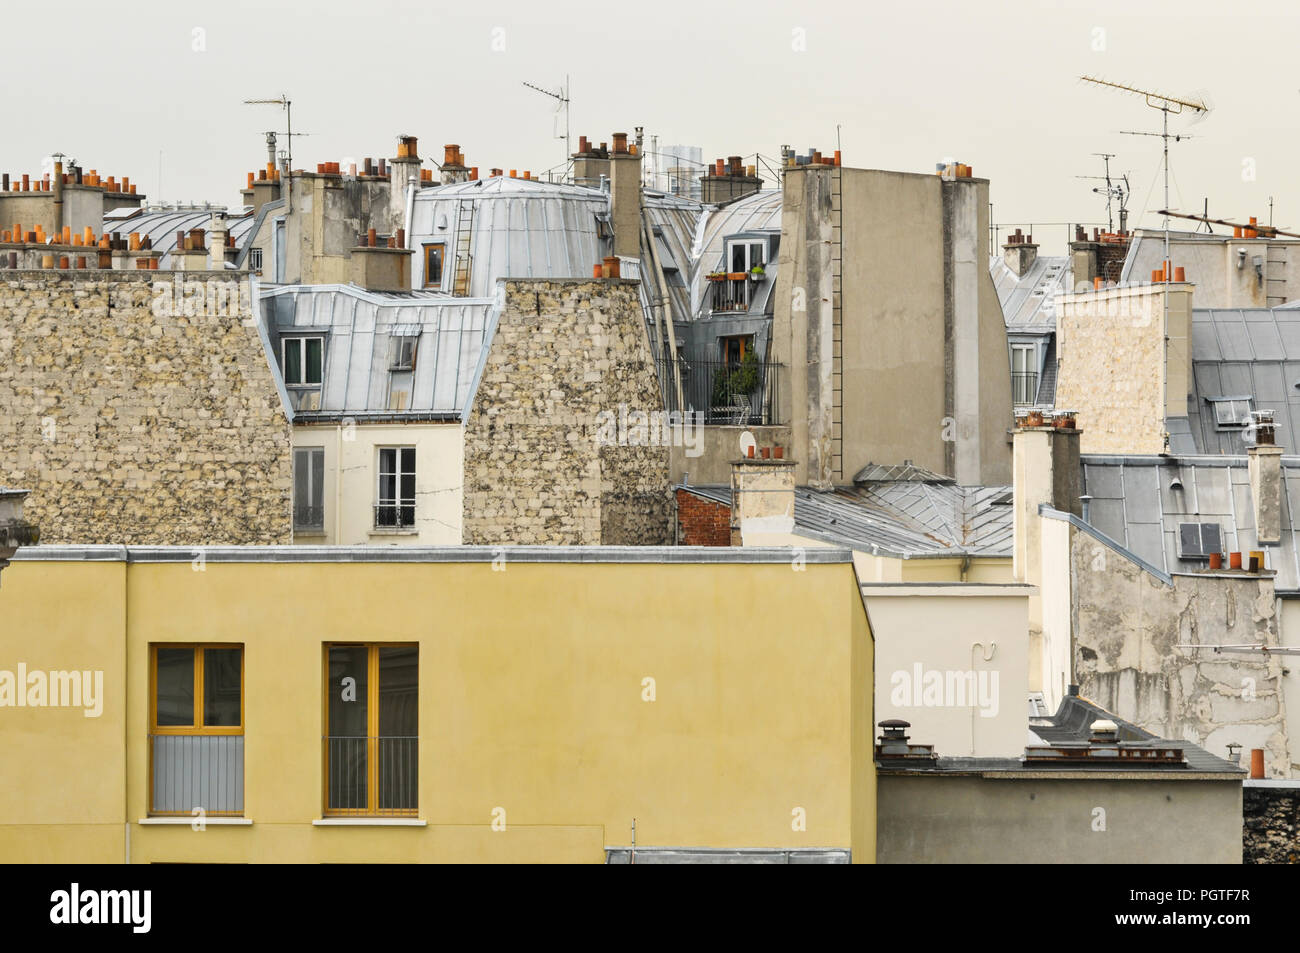 Dachlandschaften mit Schornsteinen in Paris Frankreich Stock Photo